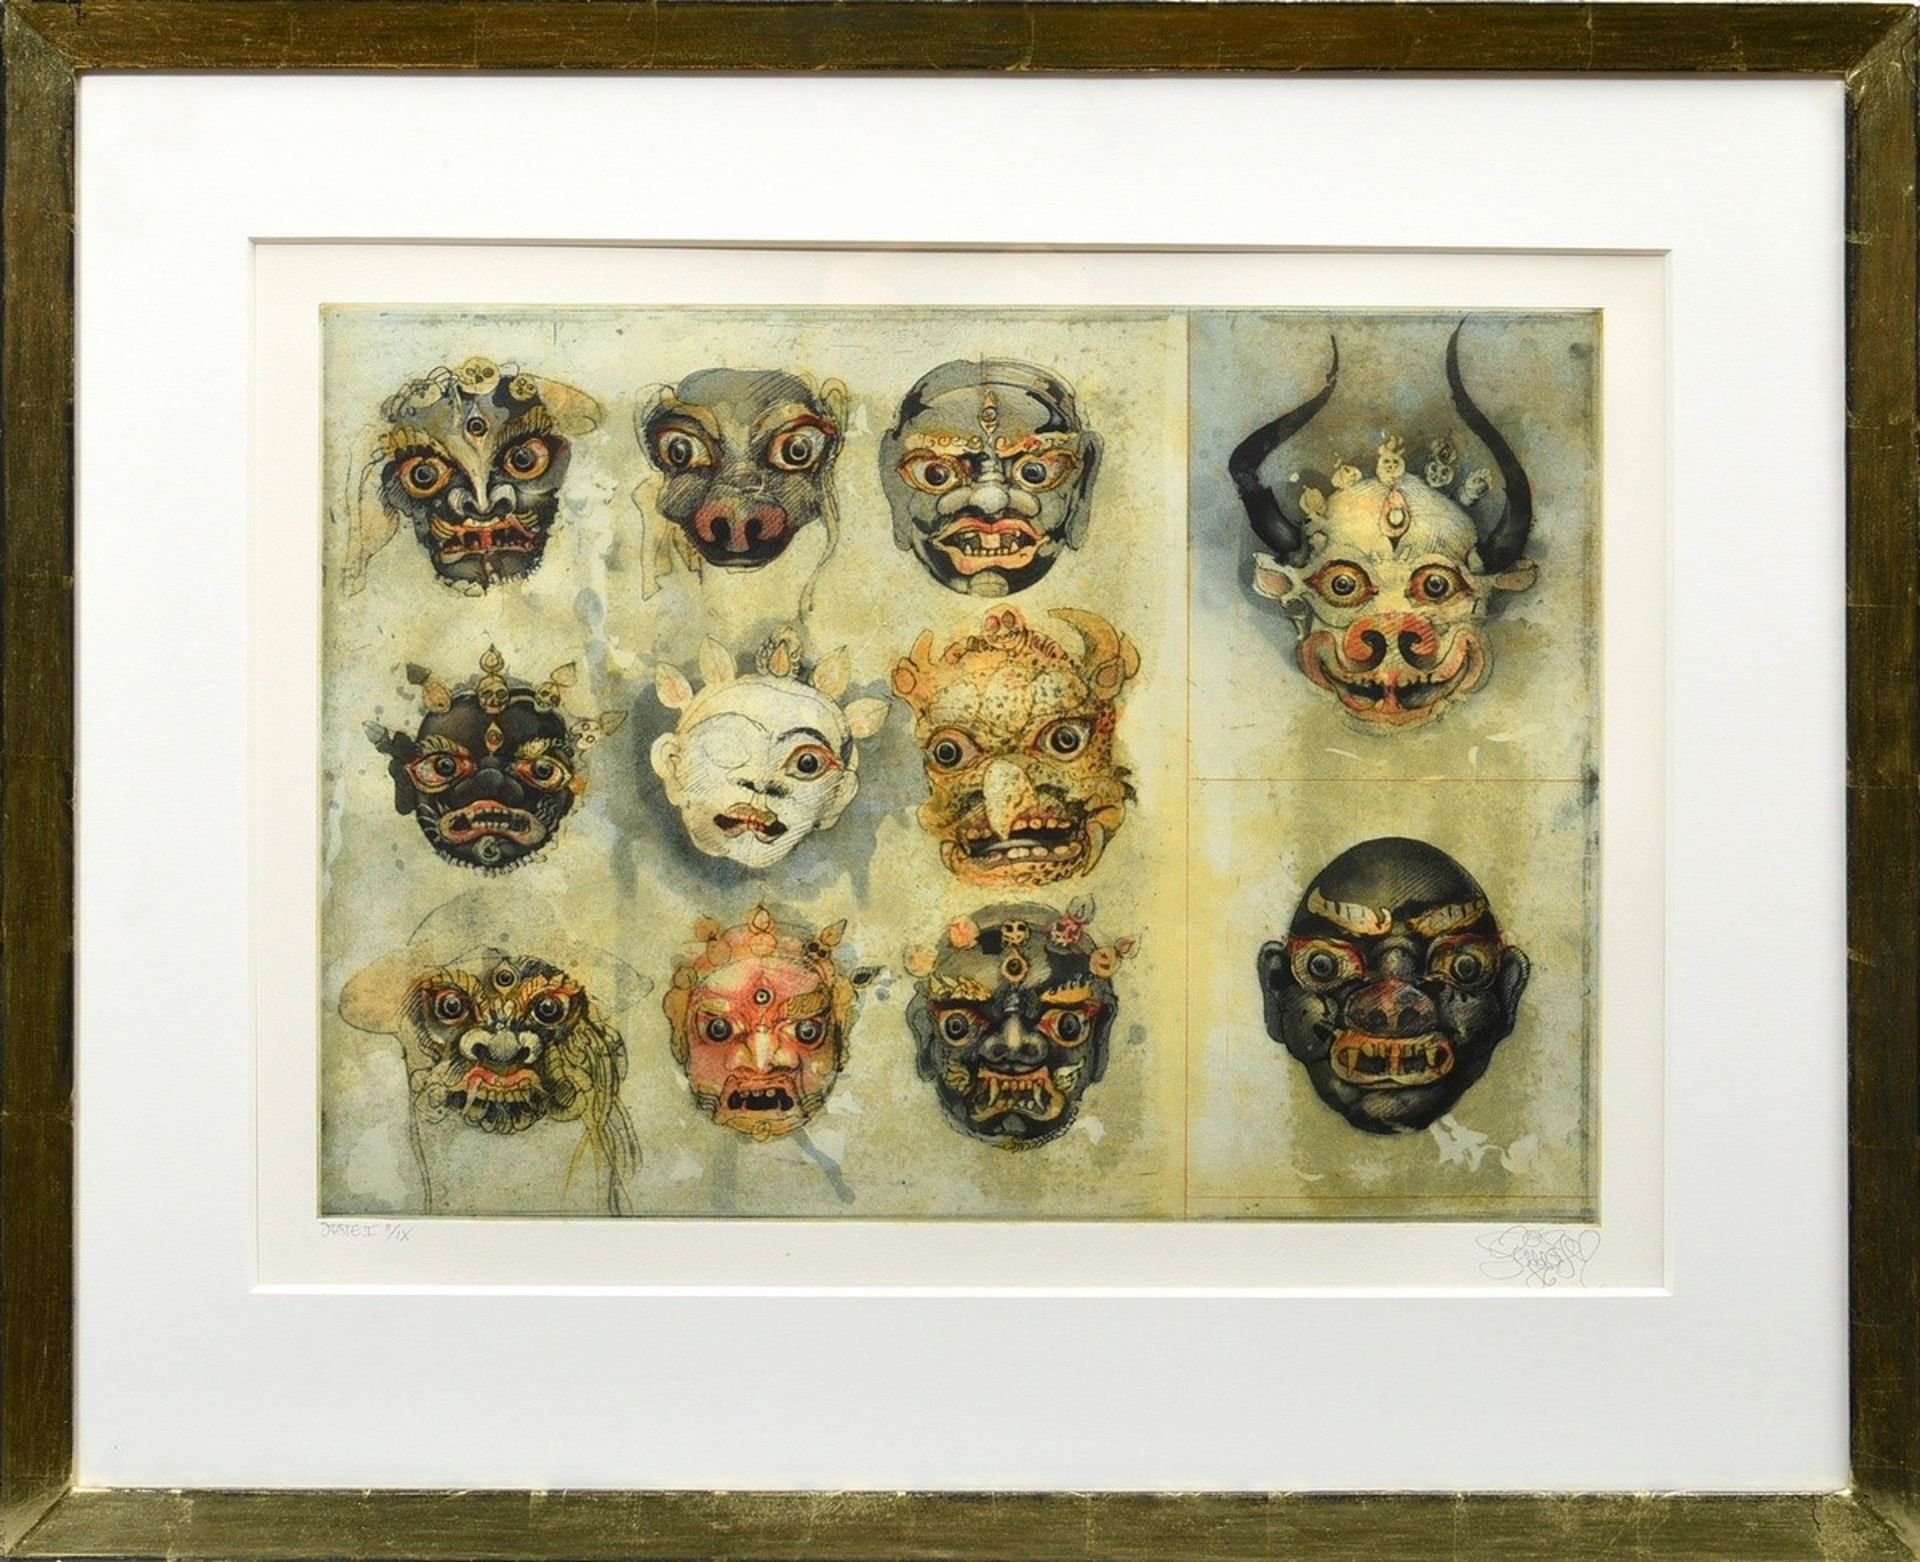 Schmeisser, Jörg (1942-2012) "11 Javanese Masks" 1986, color etching, state I, II/IX, u. sign./dat. - Image 2 of 3